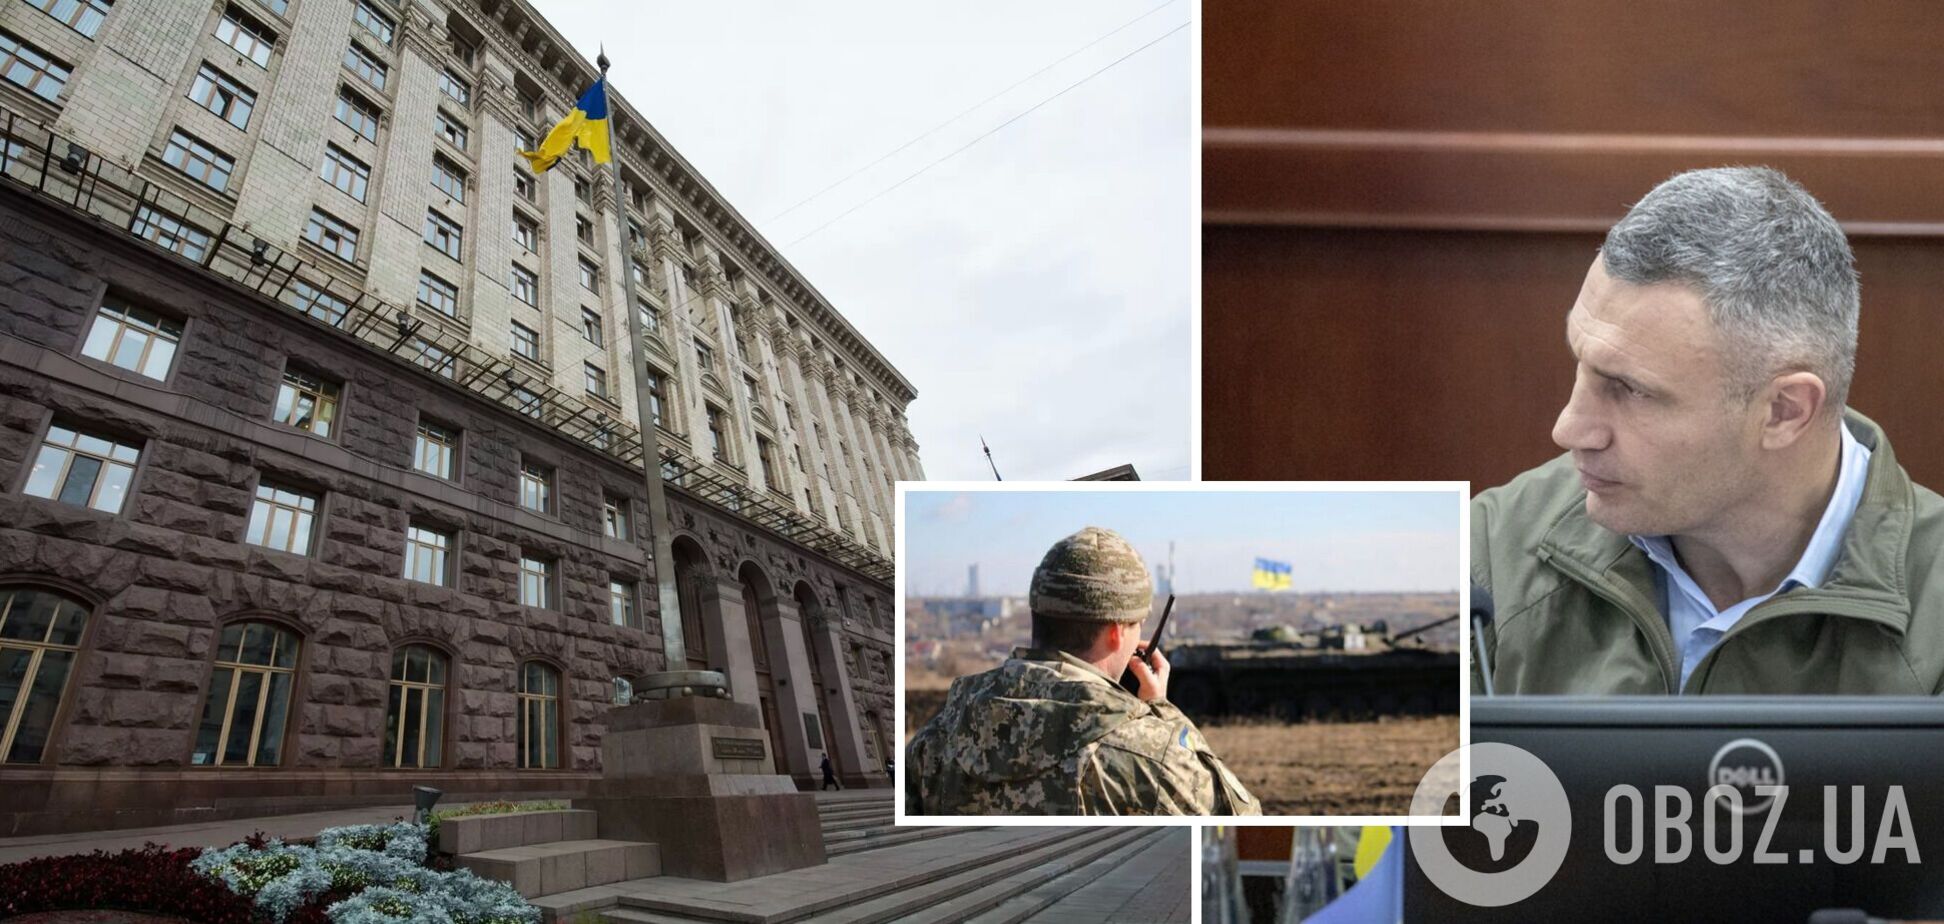 Столица активно поддерживает защитников Украины